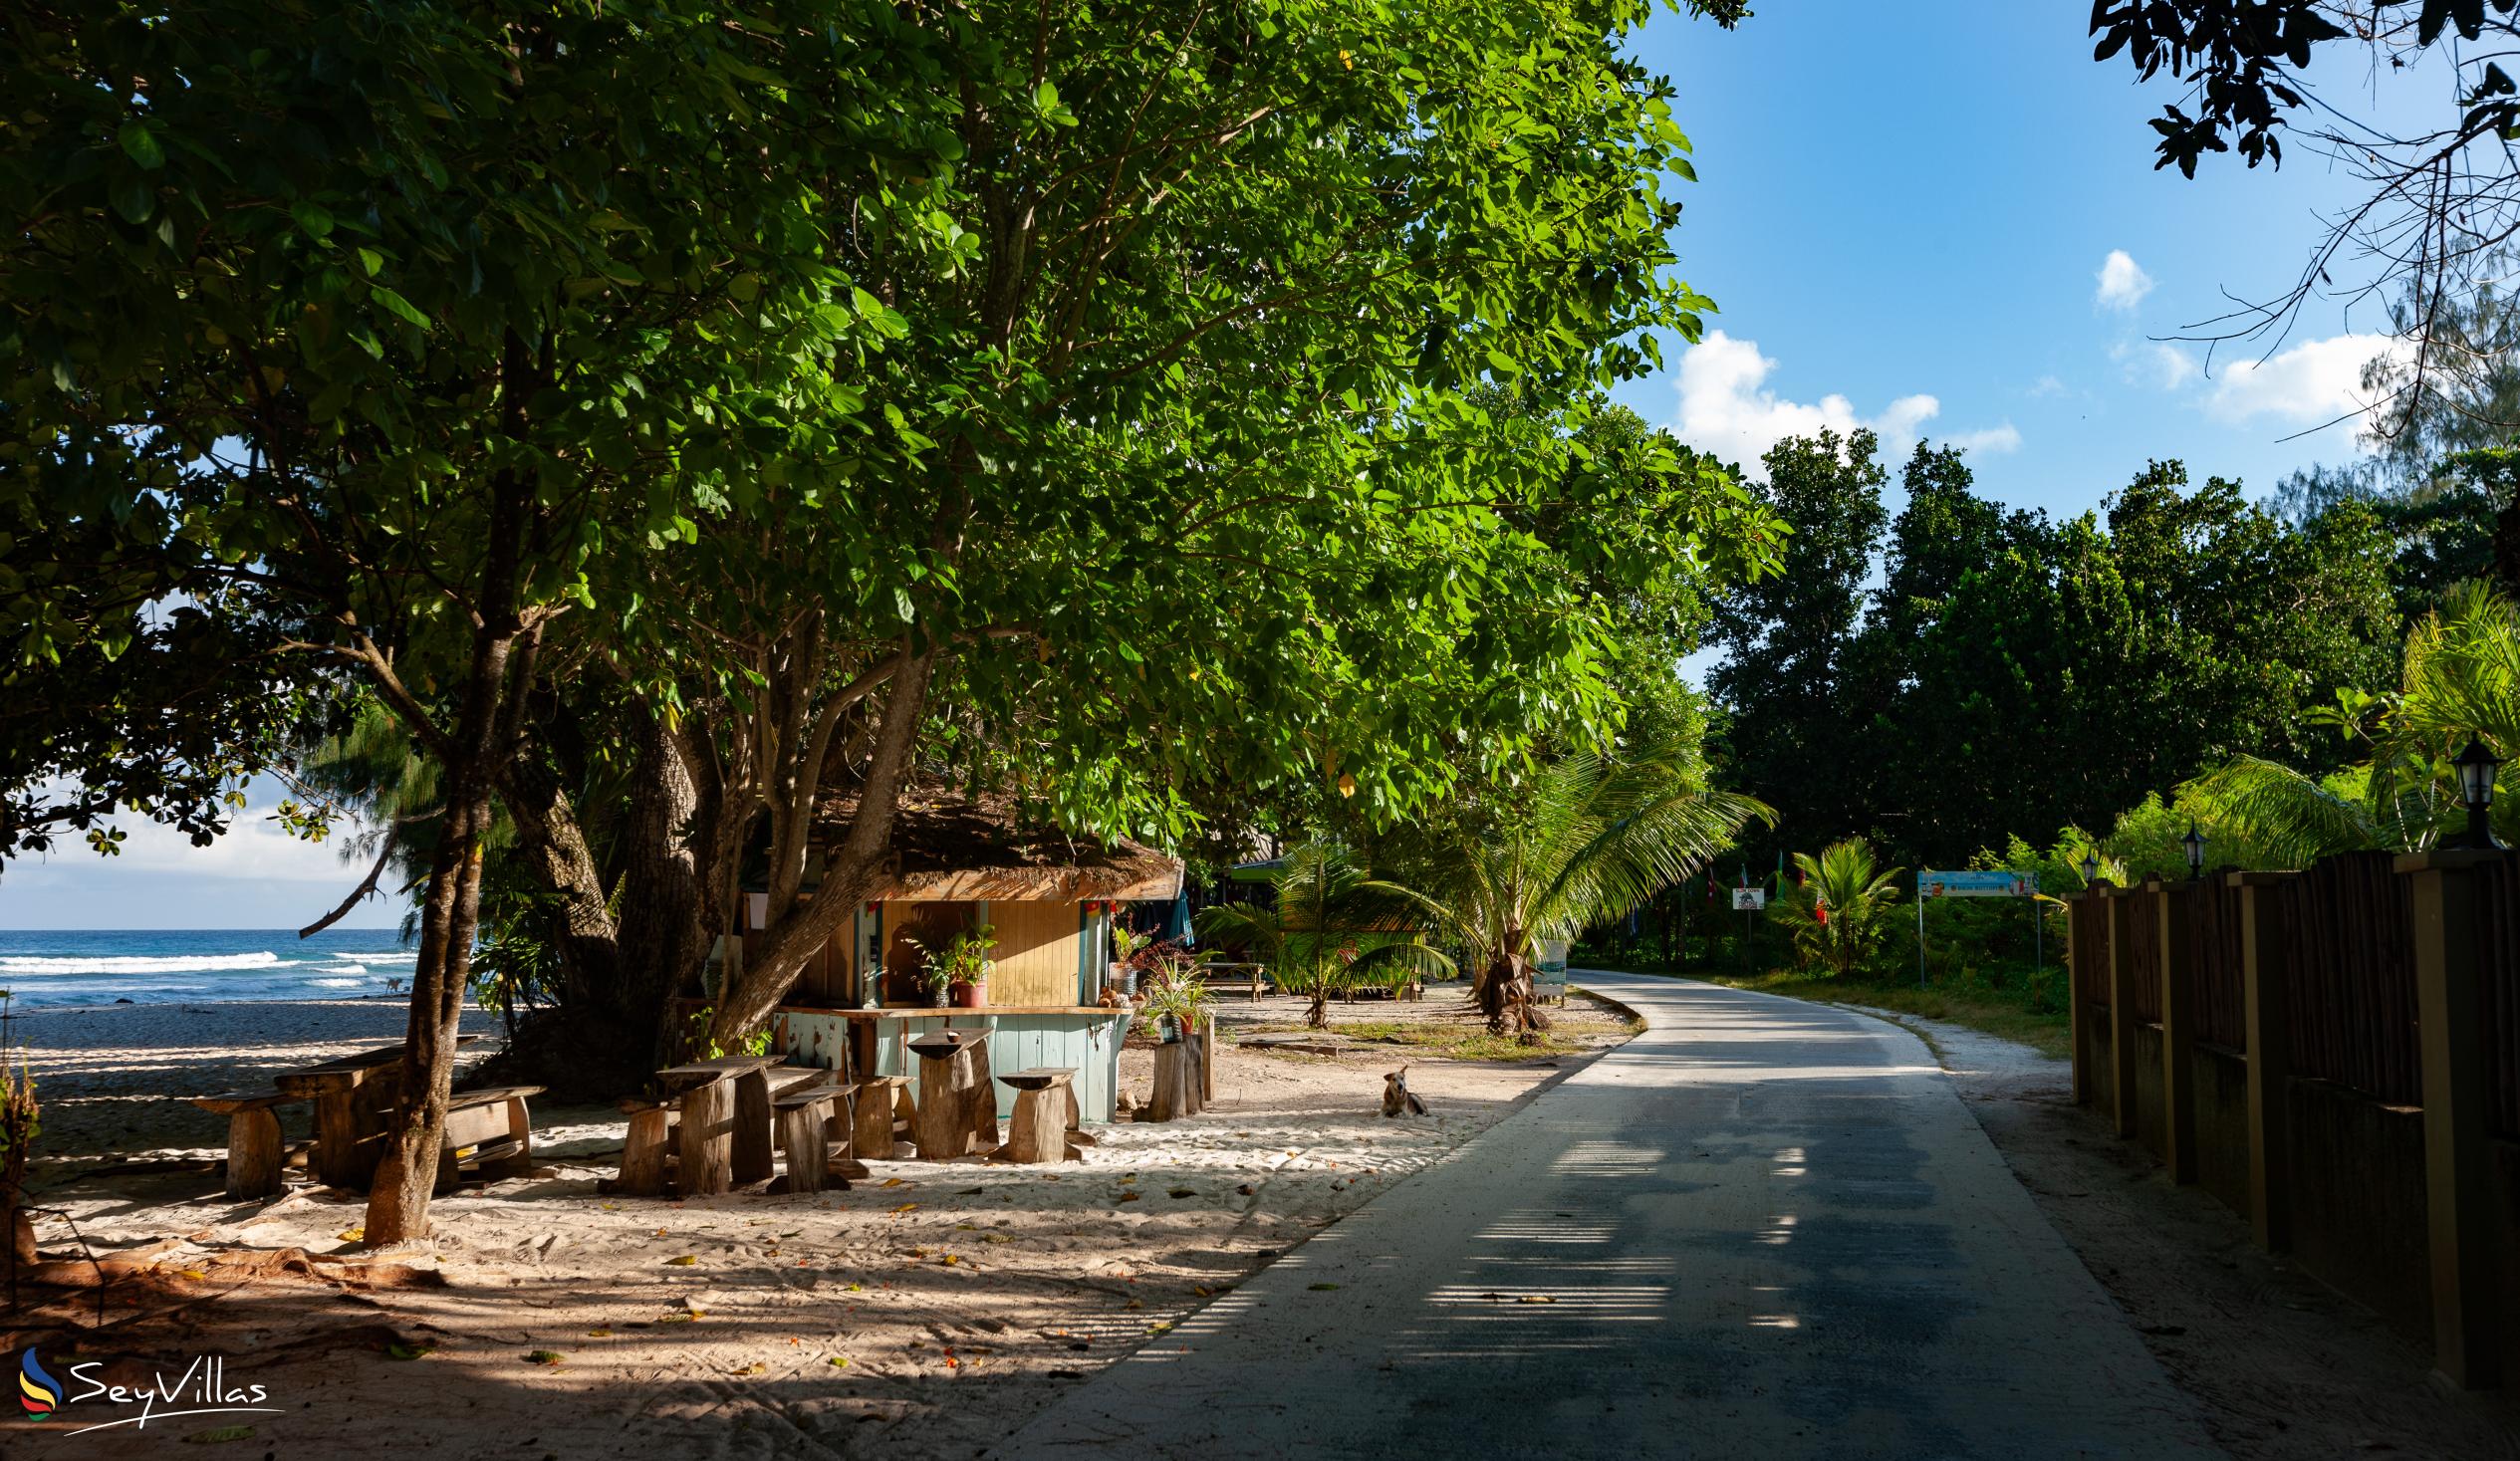 Foto 20: O'Soleil Chalets - Location - La Digue (Seychelles)